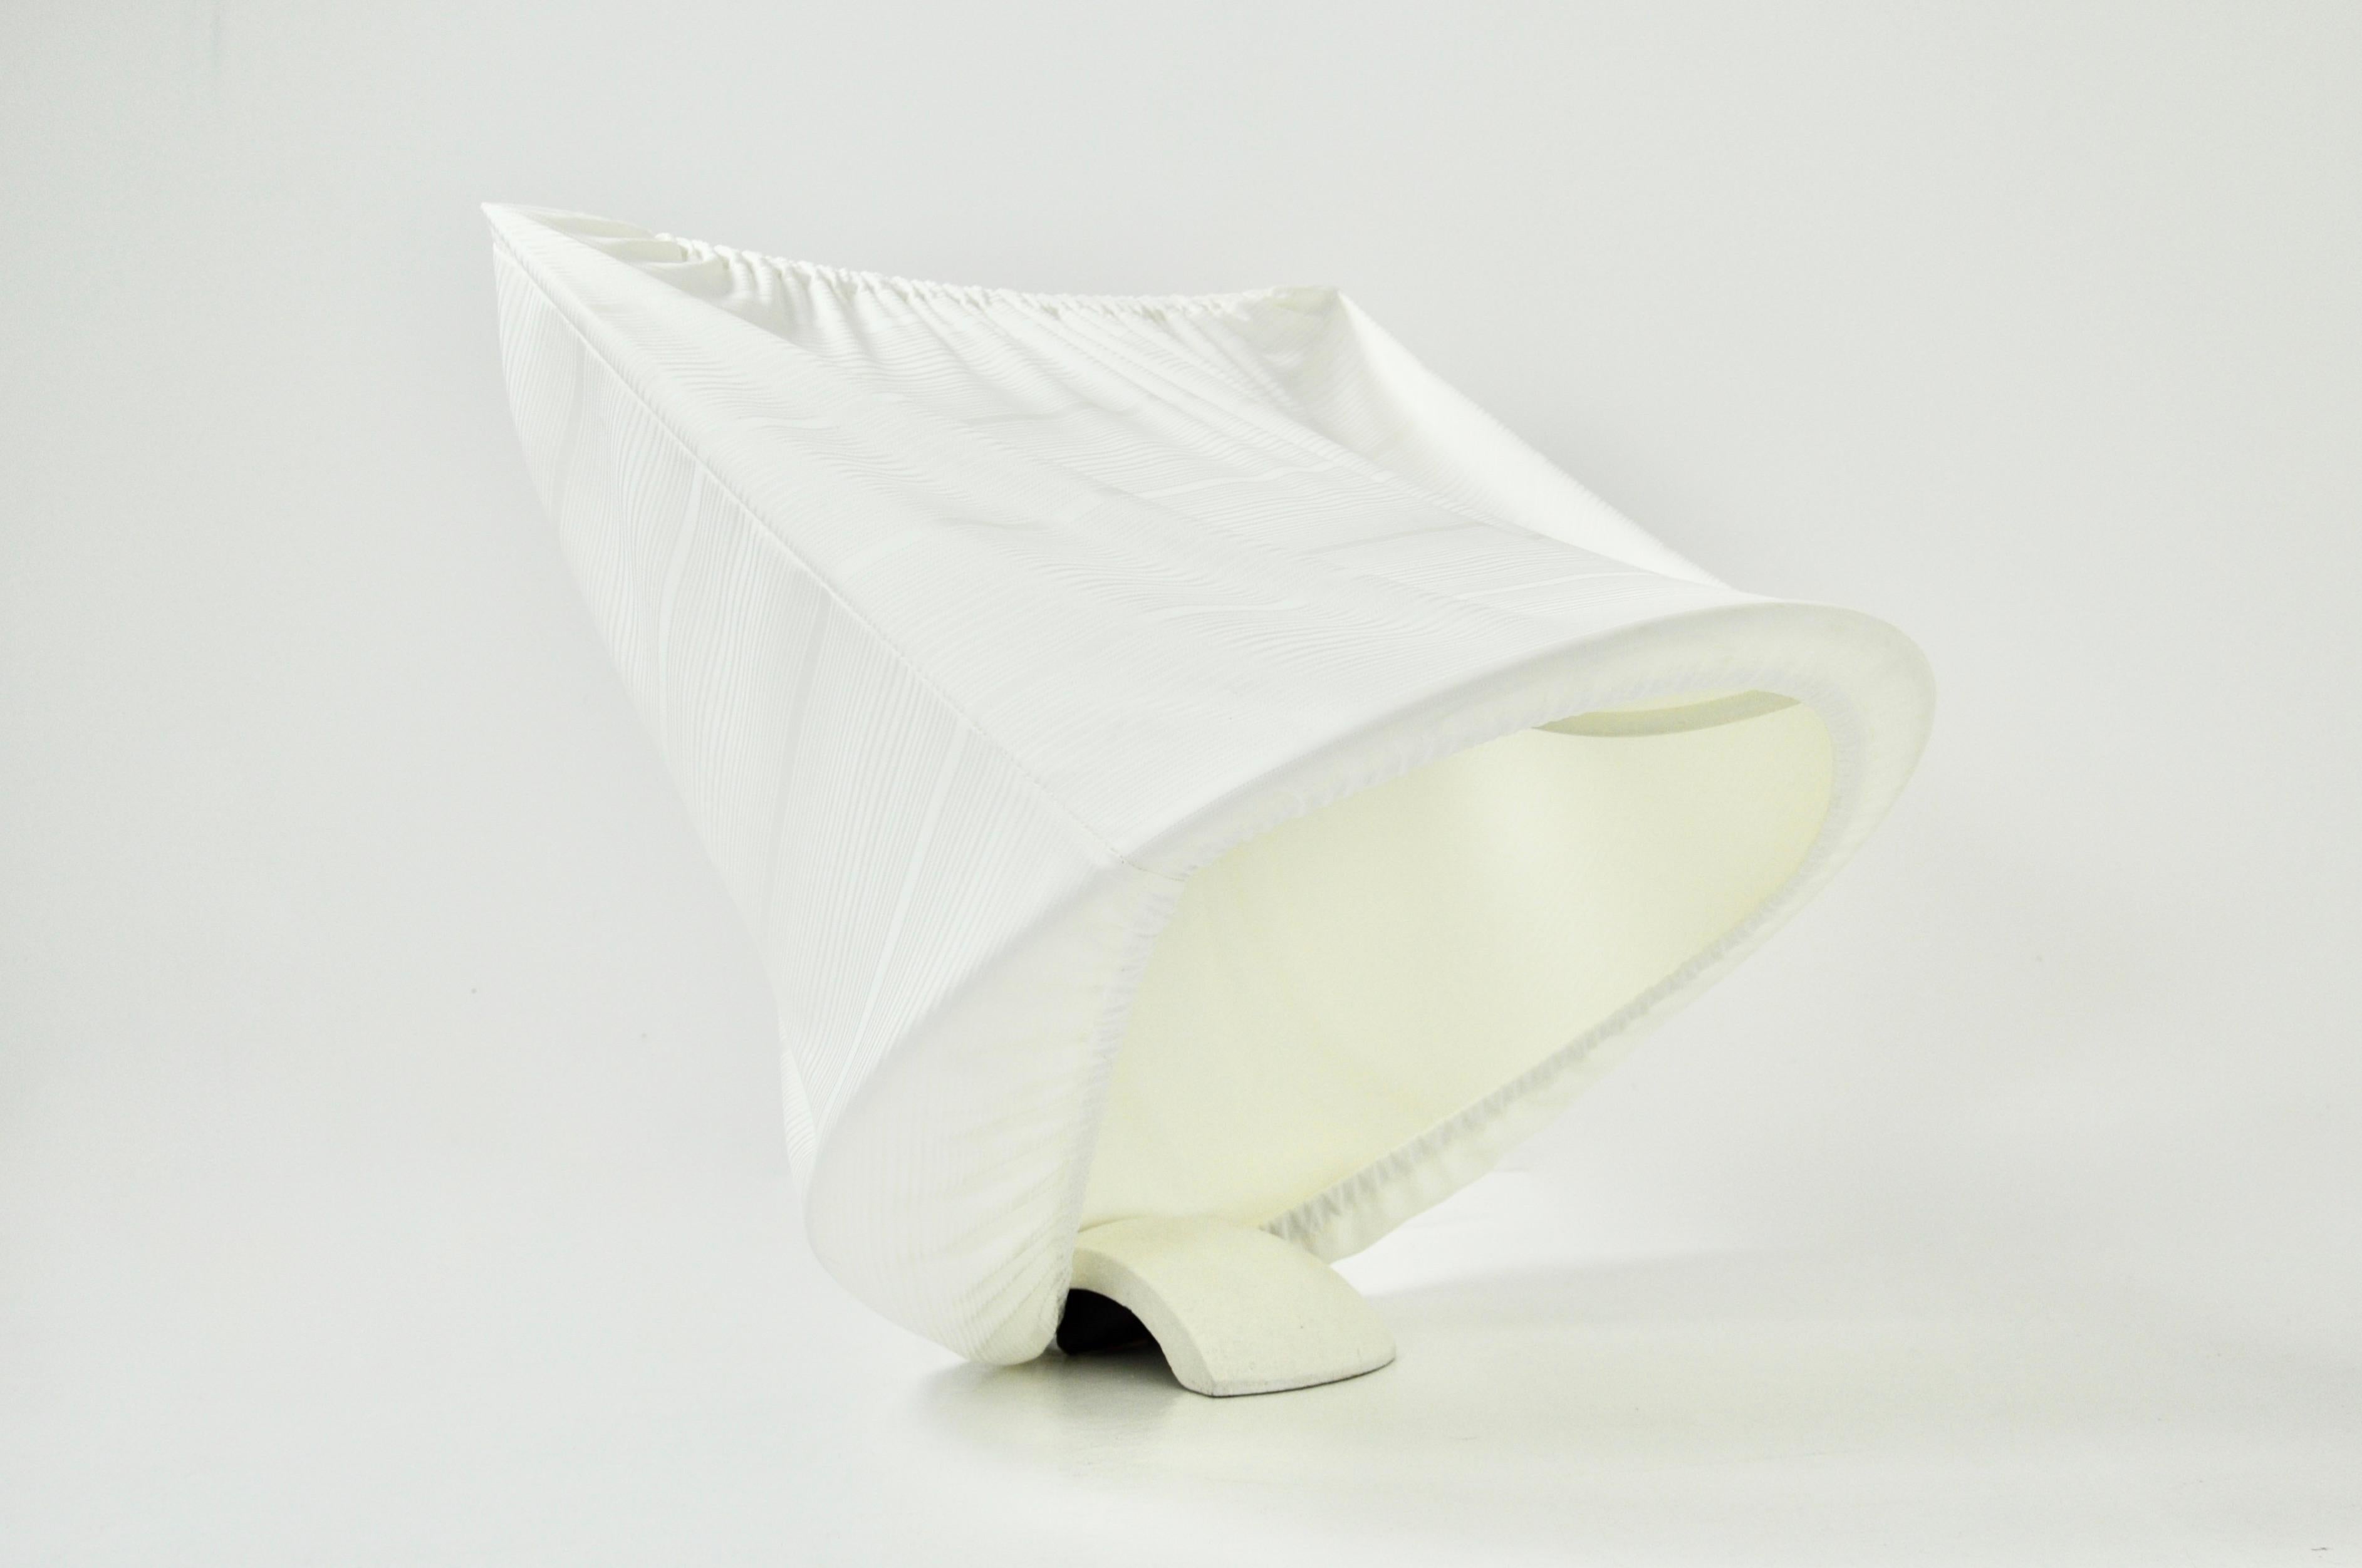 Lampe en métal blanc et tissu avec base en céramique. Modèle Circo conçu par Mario Bellini pour Artemide. Usure due à l'âge de la lampe.